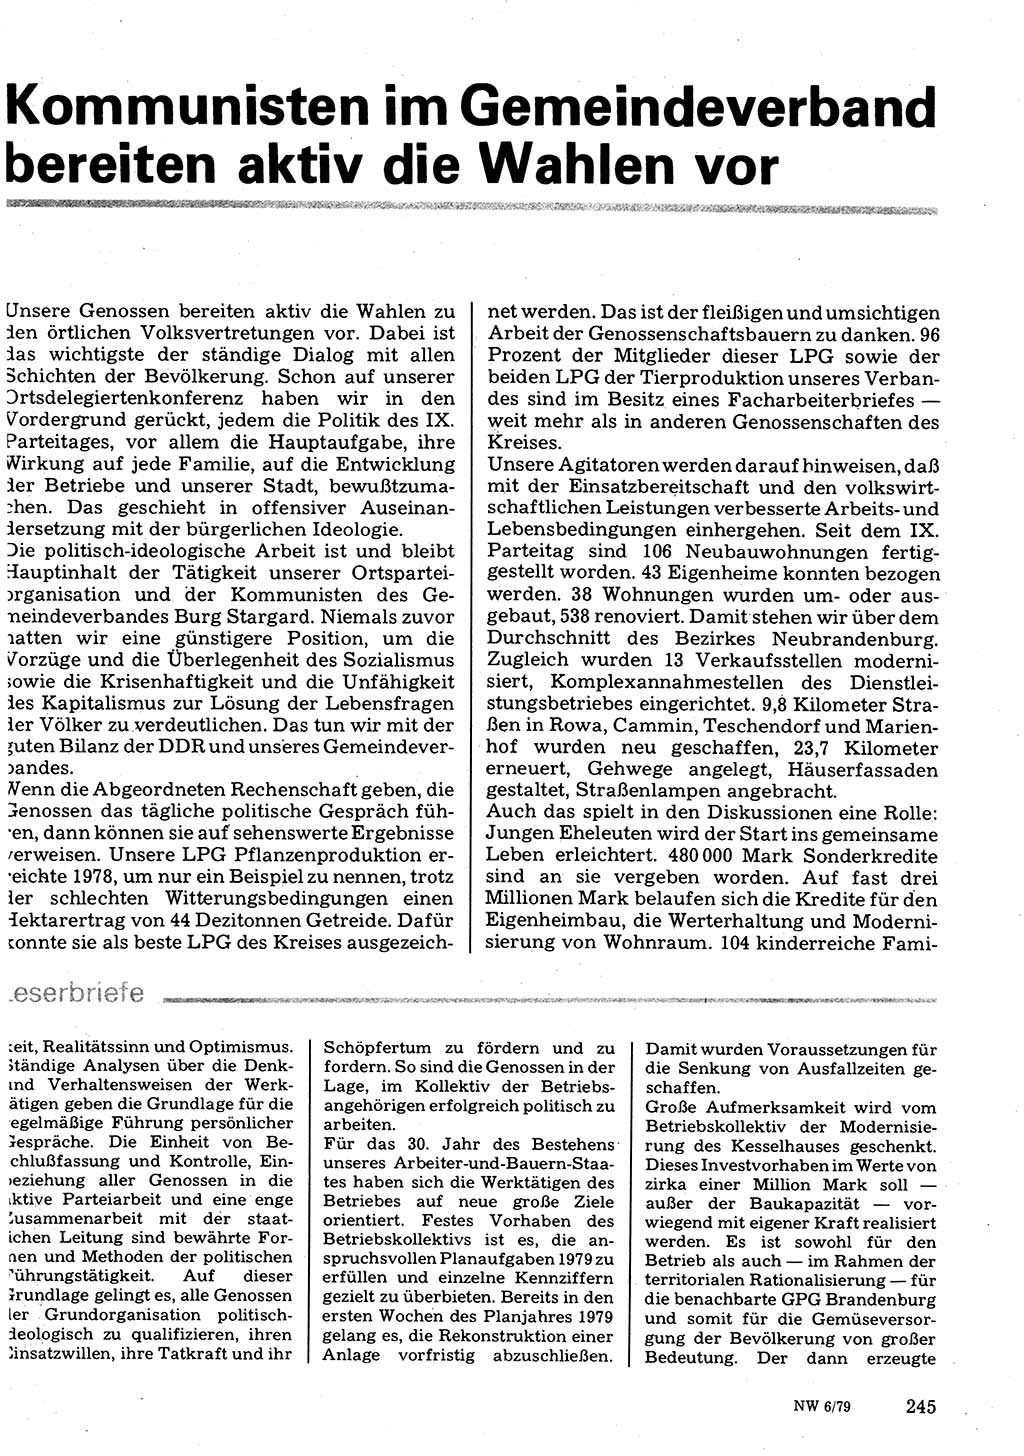 Neuer Weg (NW), Organ des Zentralkomitees (ZK) der SED (Sozialistische Einheitspartei Deutschlands) für Fragen des Parteilebens, 34. Jahrgang [Deutsche Demokratische Republik (DDR)] 1979, Seite 245 (NW ZK SED DDR 1979, S. 245)